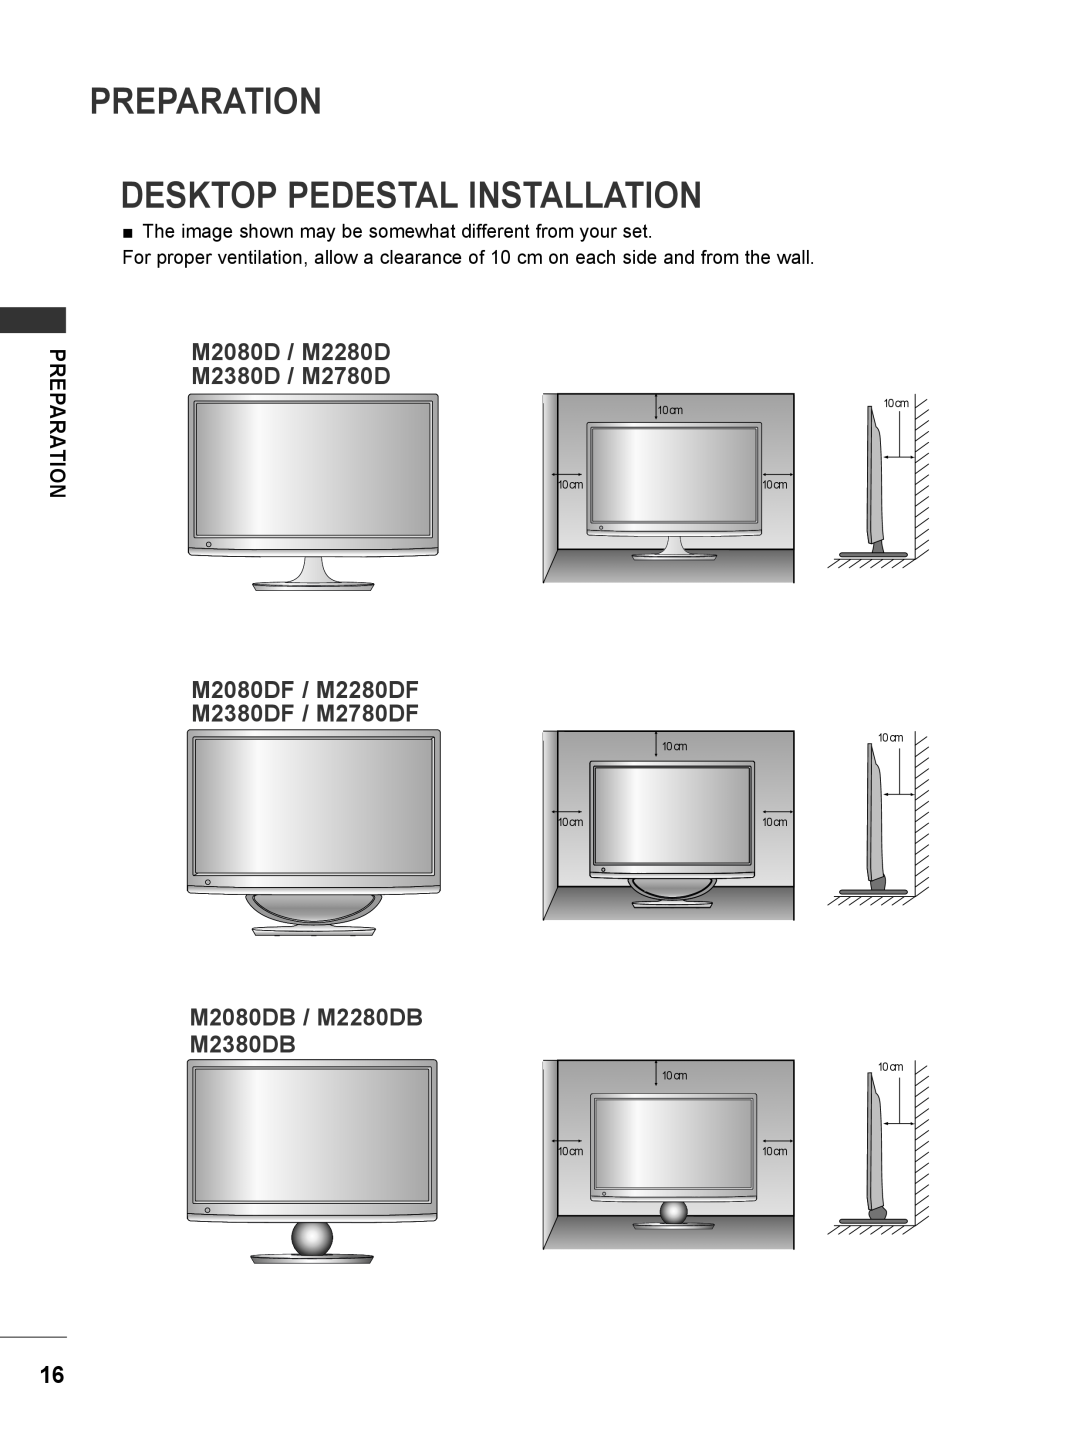 LG Electronics M2780DN, M2780DF, M2380DN, M2380DB Preparation Desktop Pedestal Installation, M2080D / M2280D M2380D / M2780D 